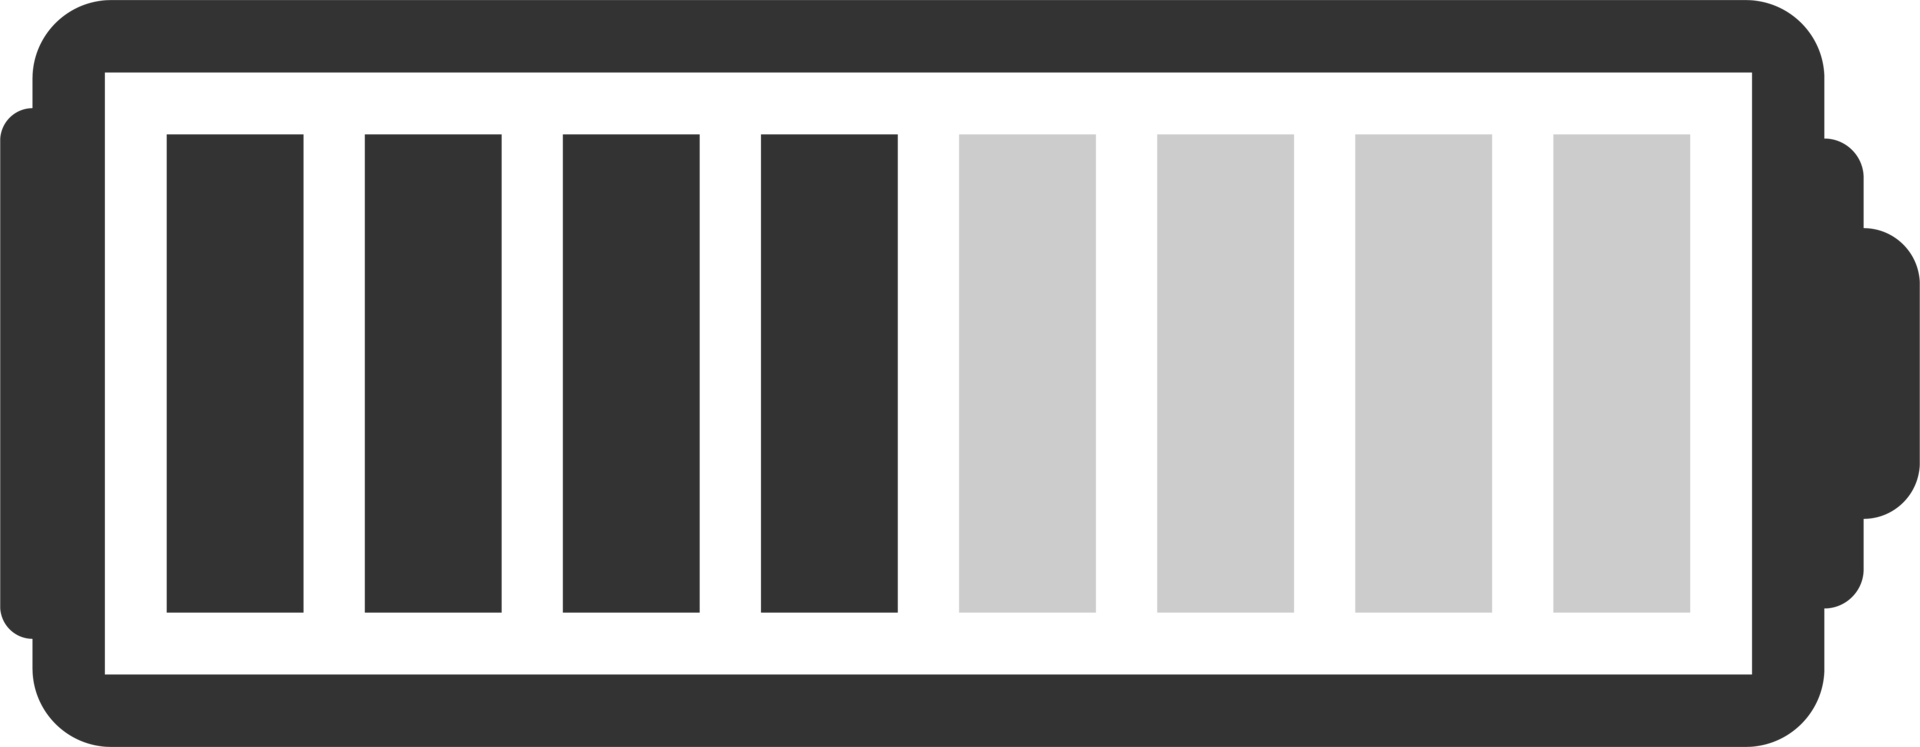 illustration vectorielle de l'icône de niveau de charge de la batterie png